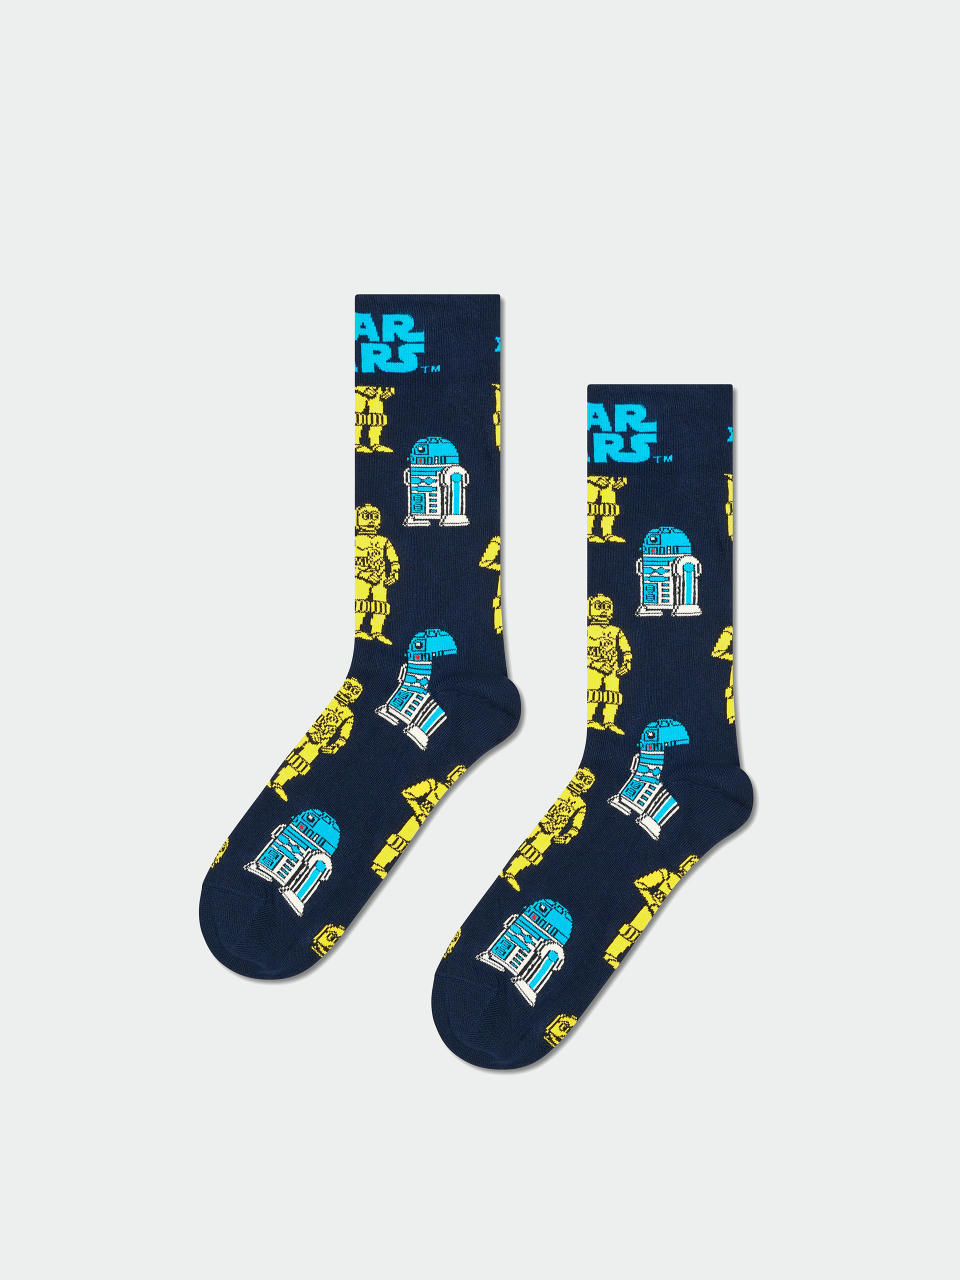 Ponožky Happy Socks Star Wars R2D2 & C3PO (navy)